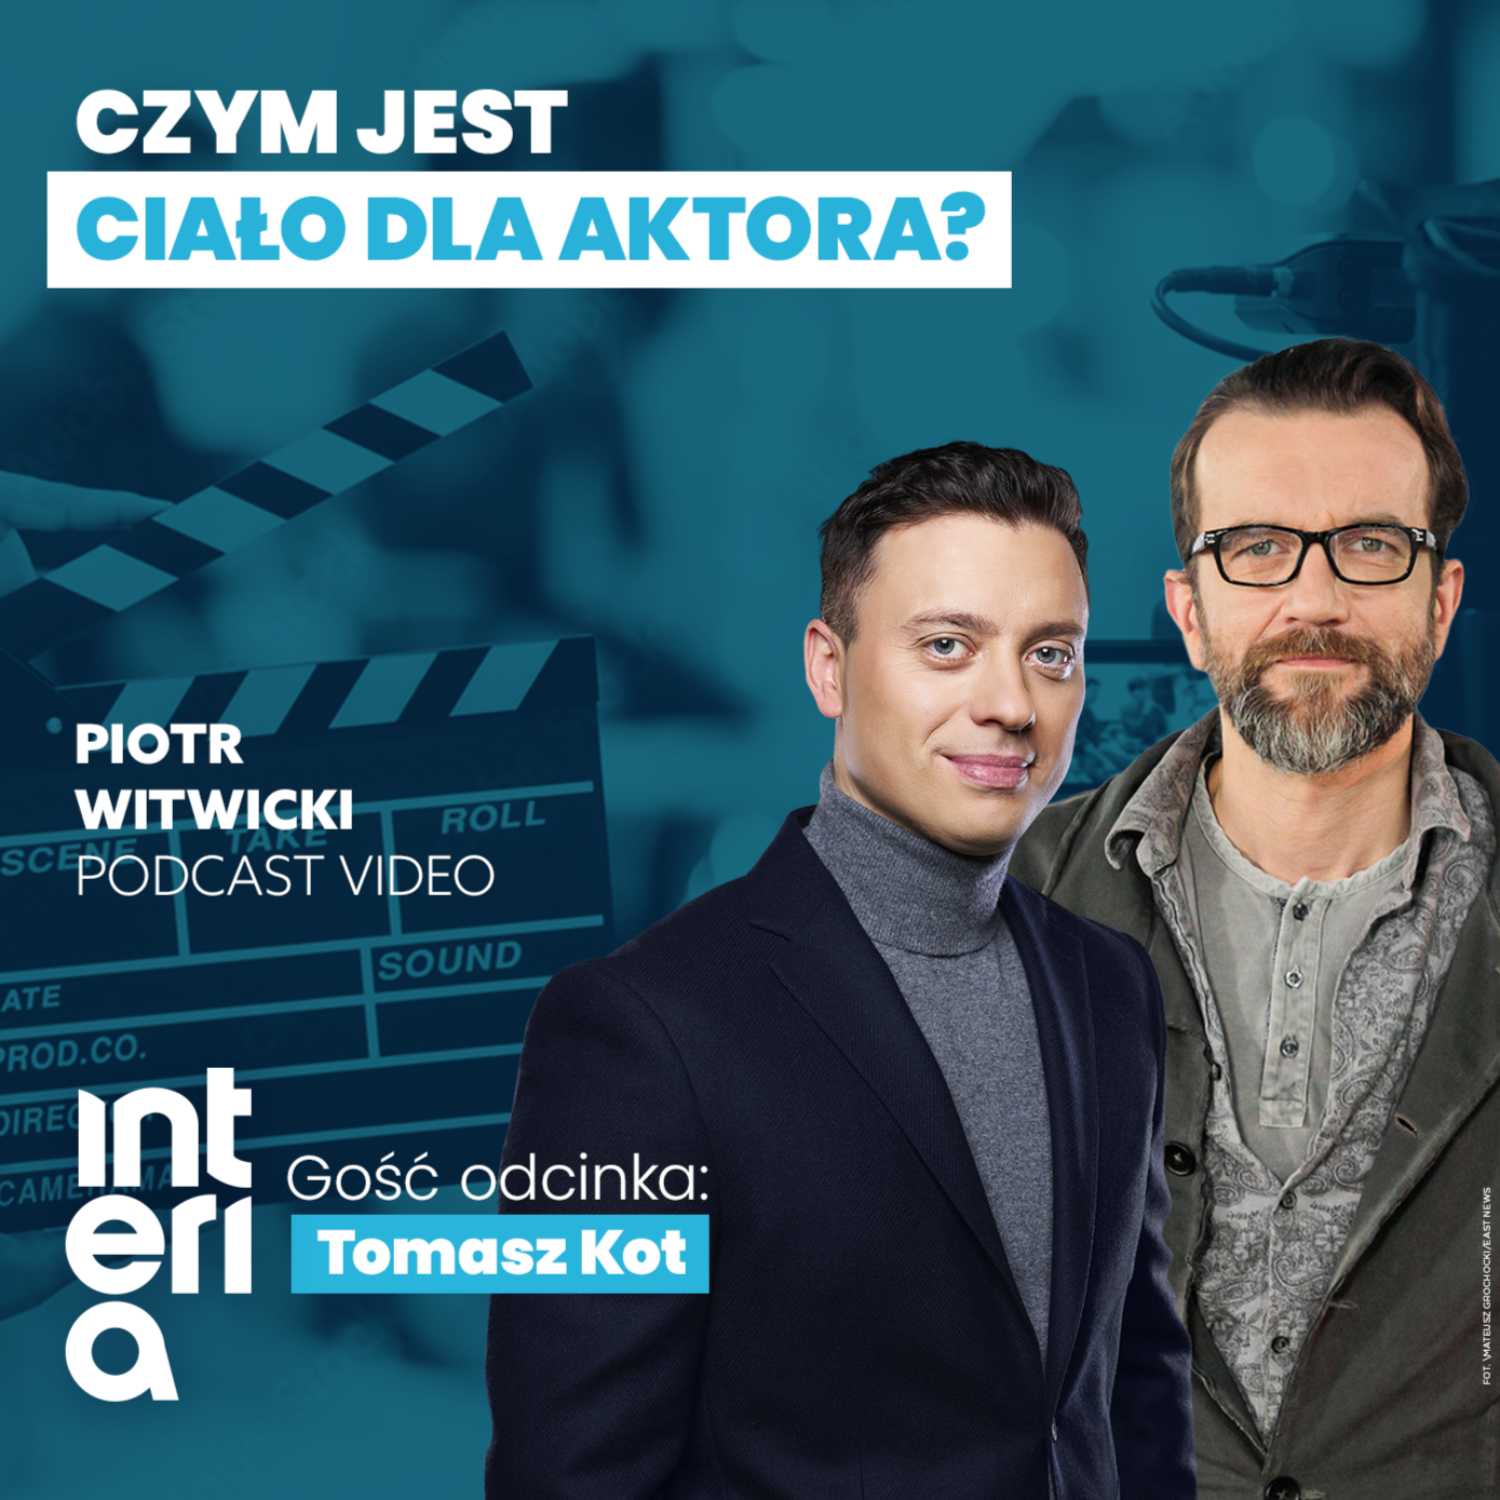 Tomasz Kot - Piotr Witwicki podcast